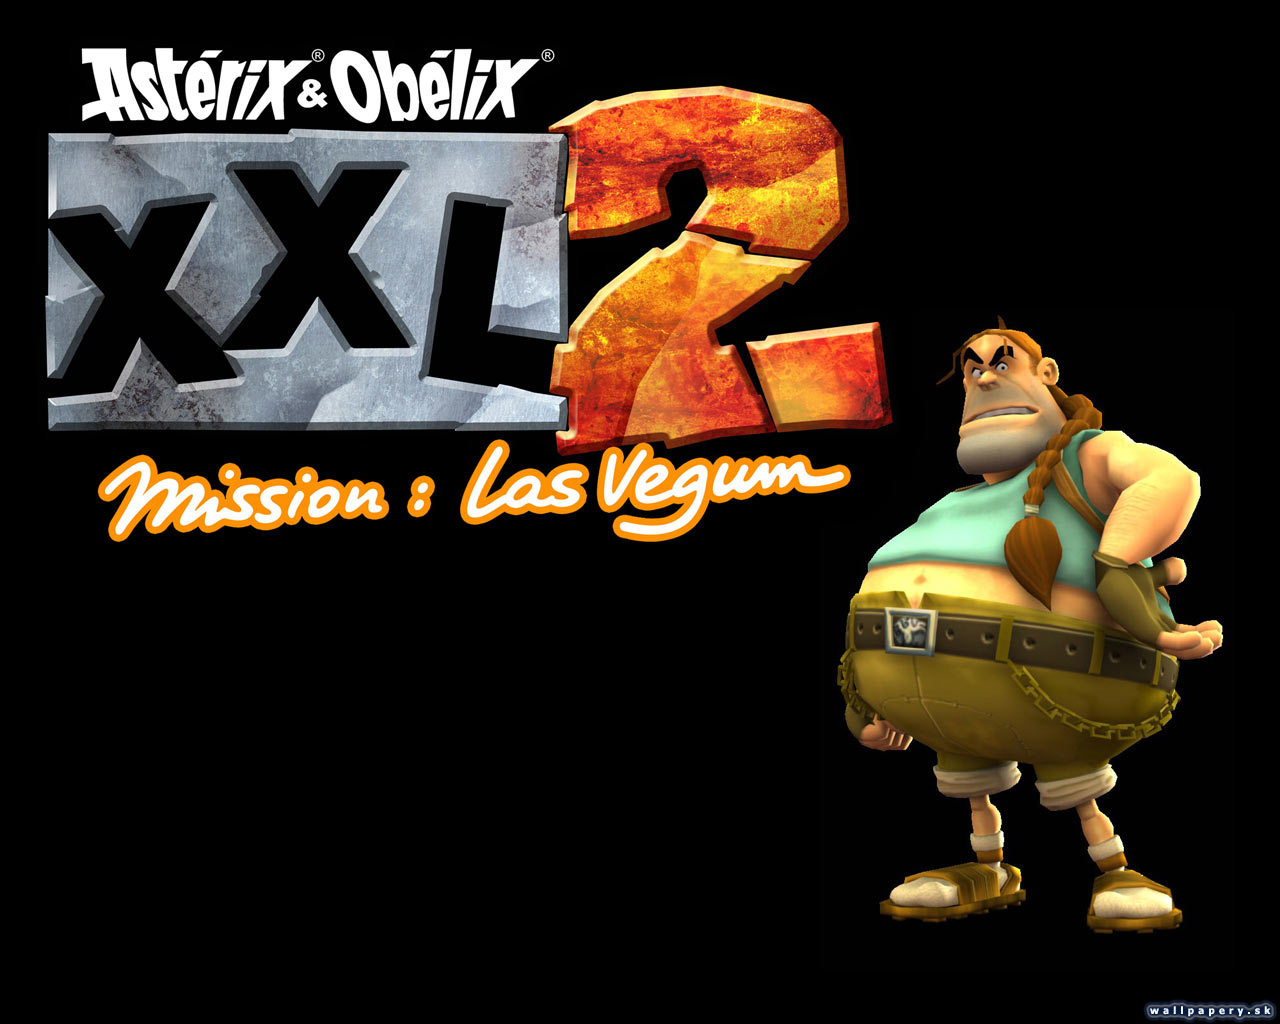 Asterix & Obelix XXL 2: Mission Las Vegum - wallpaper 4